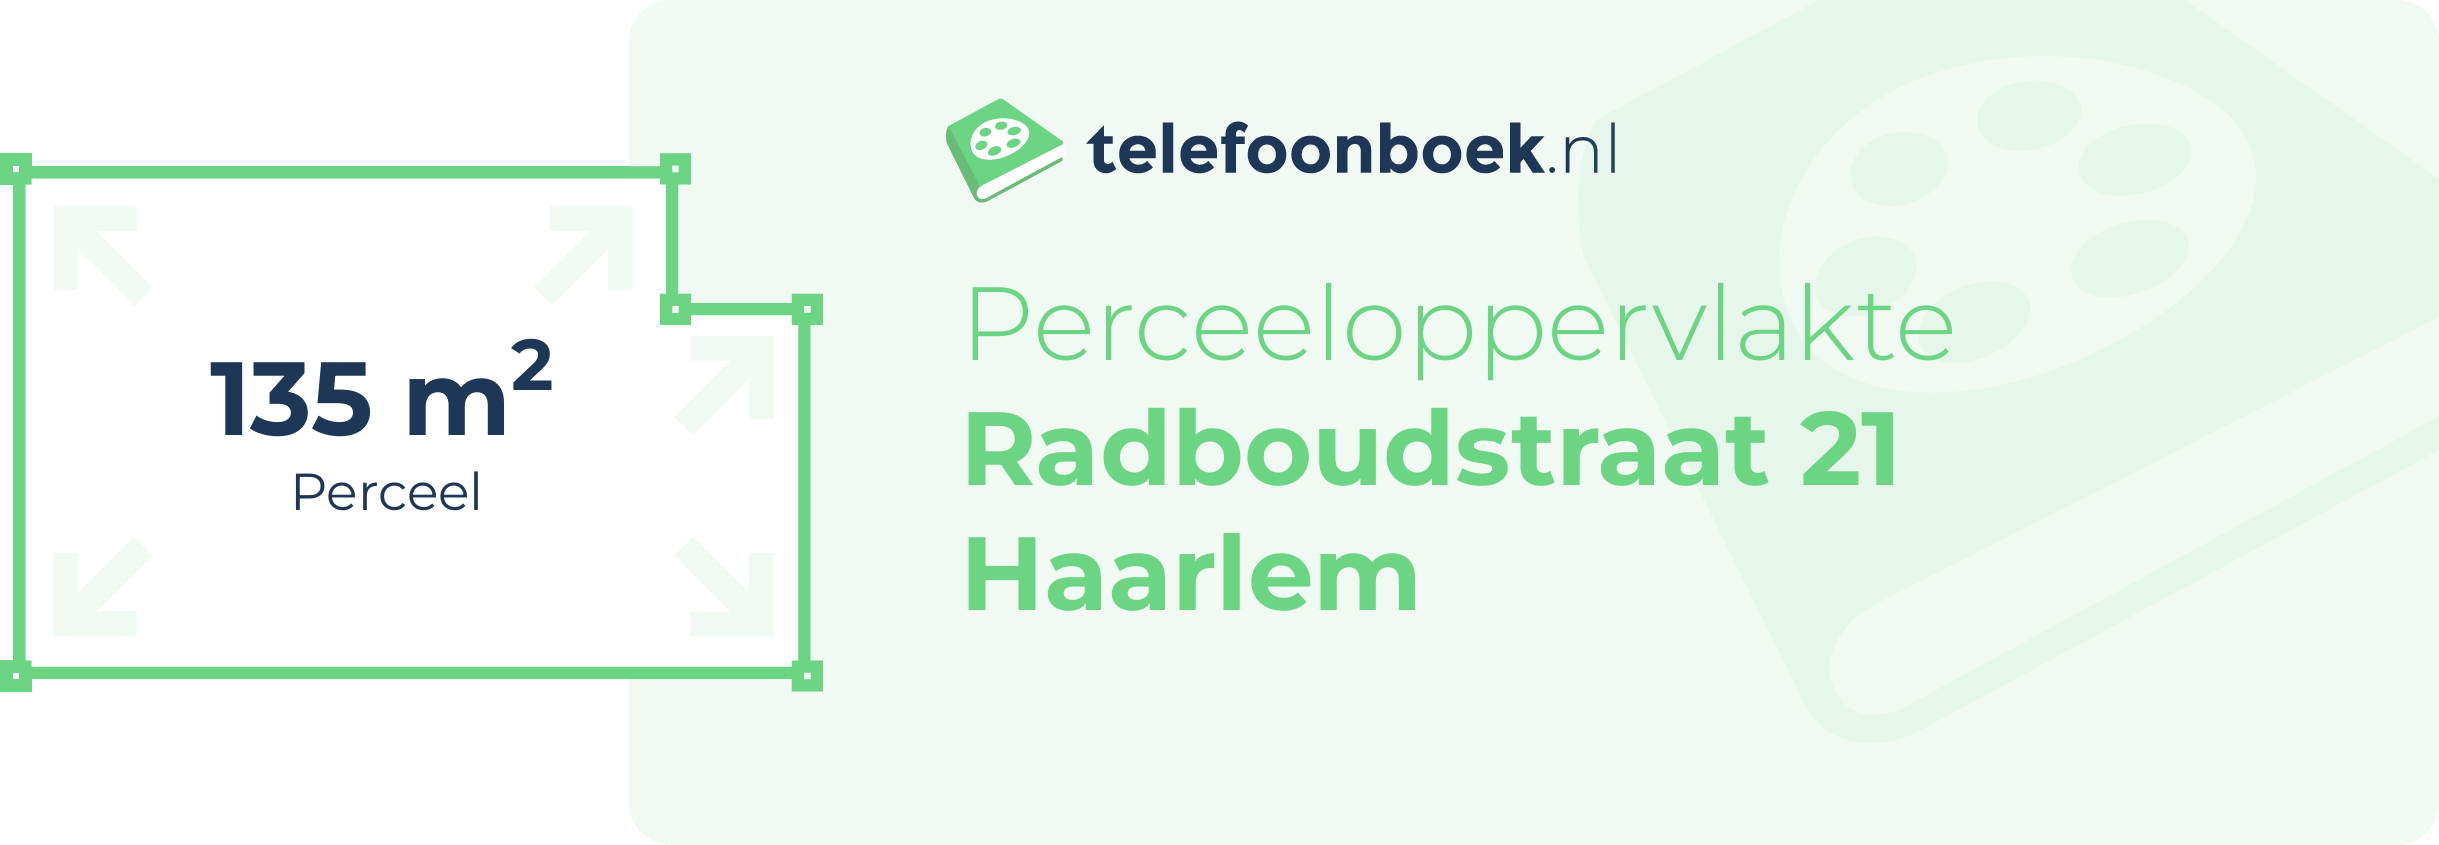 Perceeloppervlakte Radboudstraat 21 Haarlem